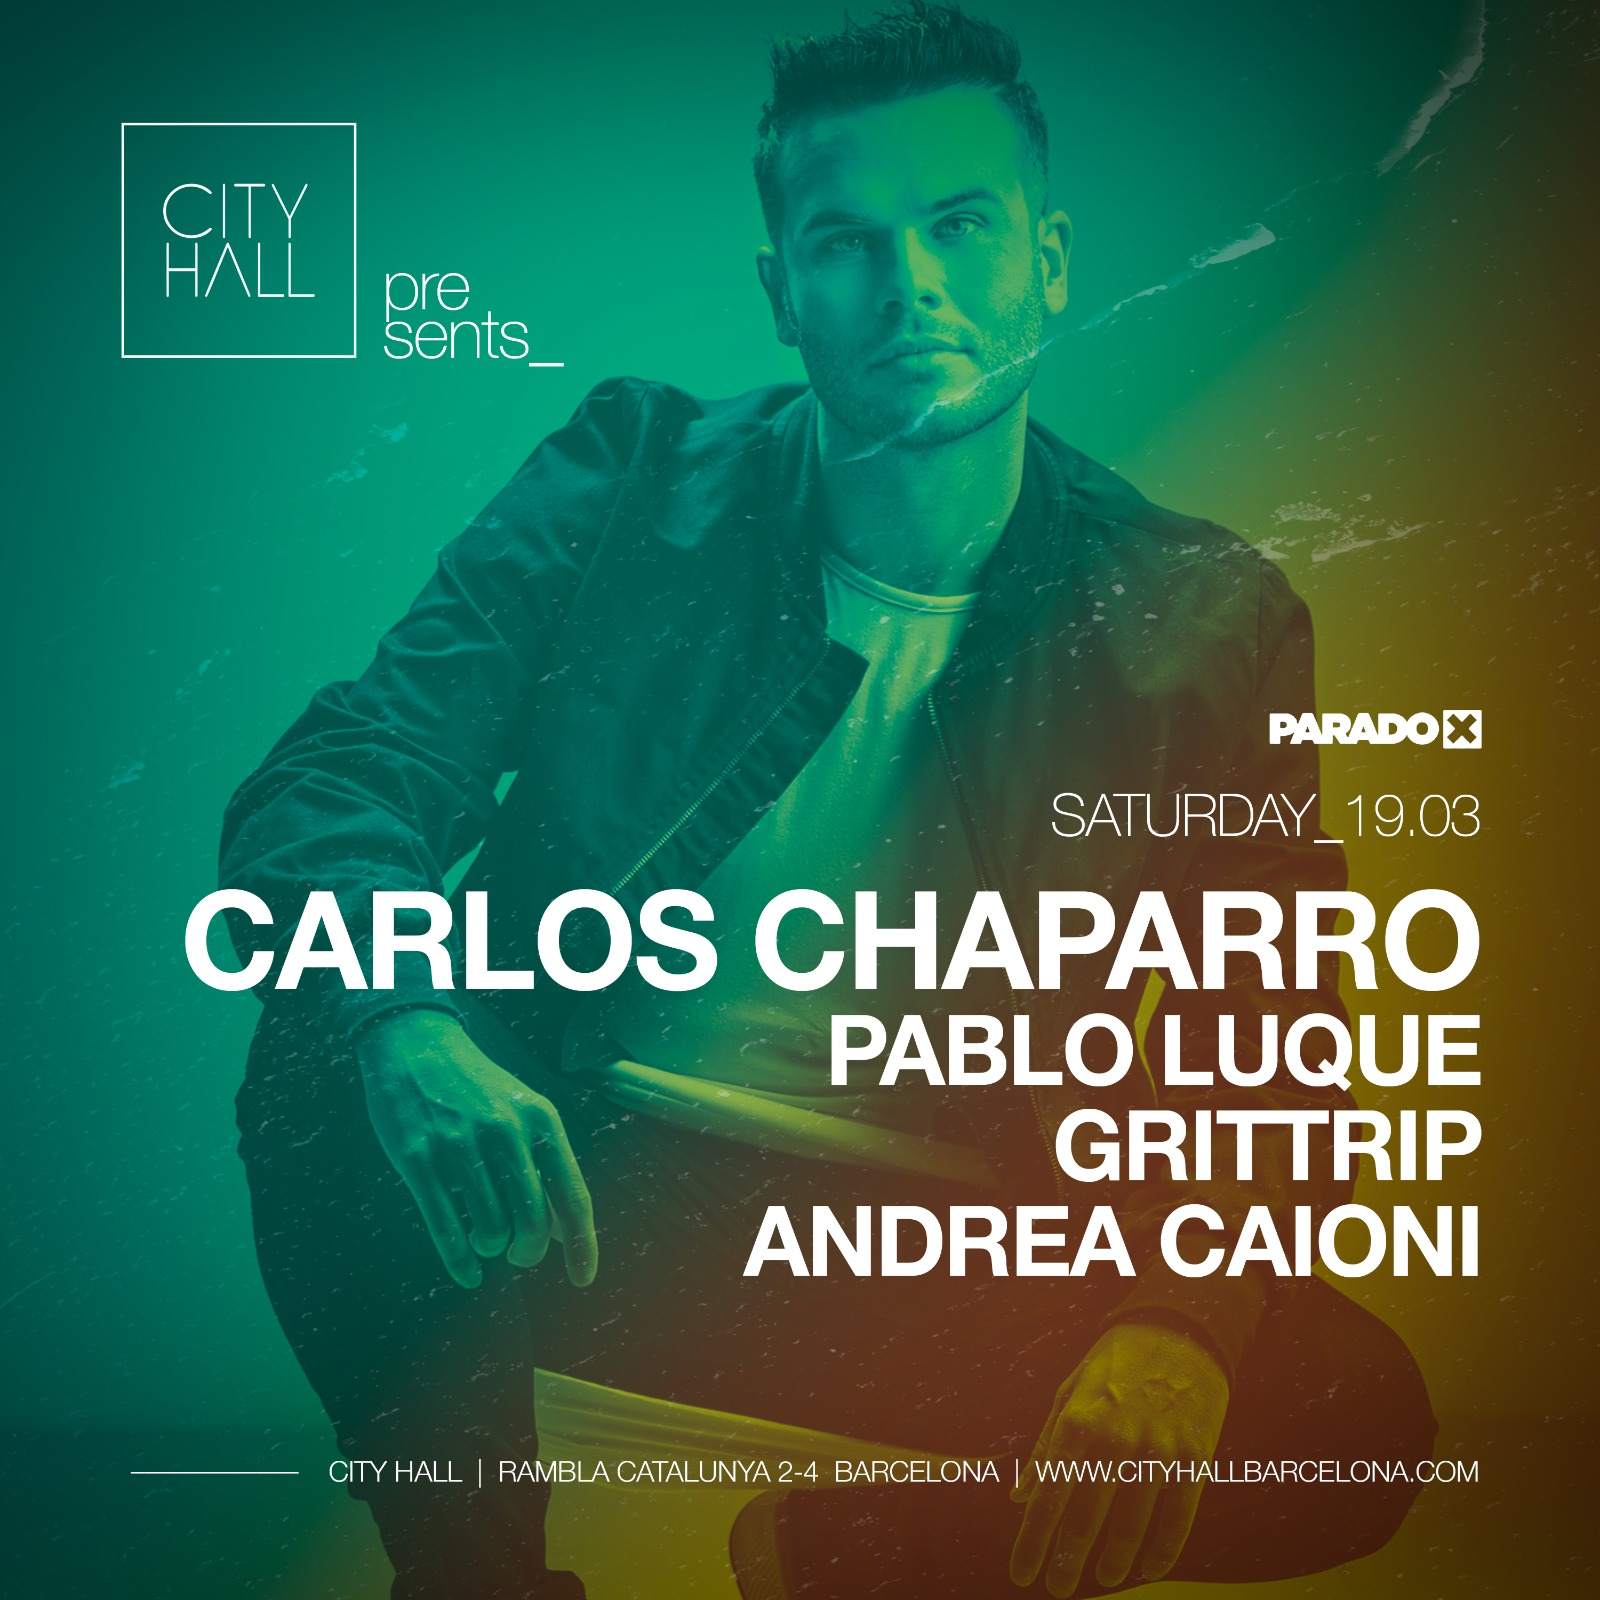 City Hall pres. Paradox with Carlos Chaparro - Pablo Luque - Grittrip - Andrea Caioni - フライヤー裏